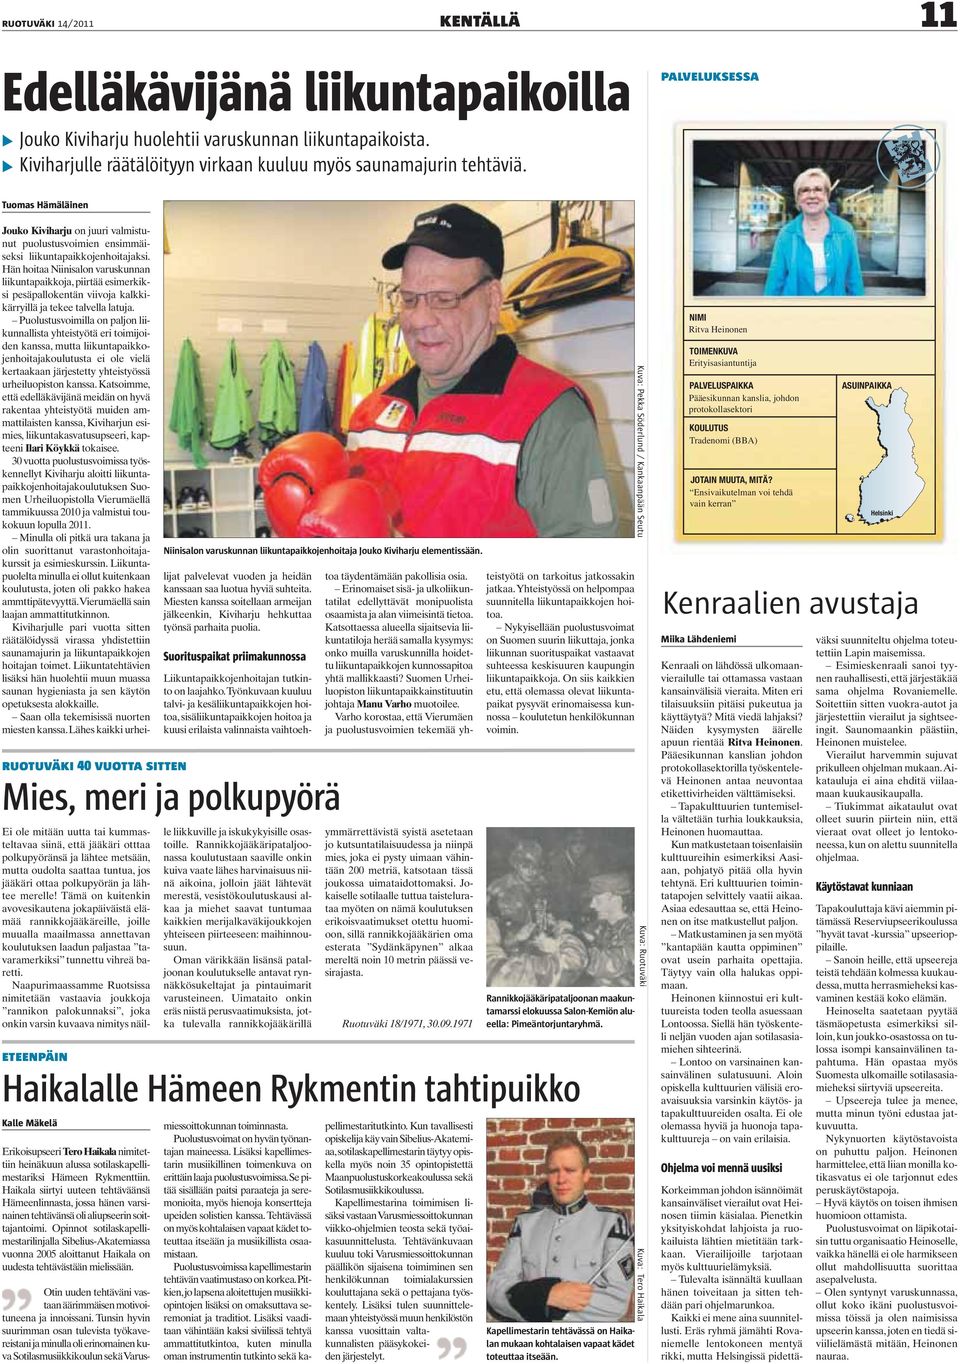 Tuomas Hämäläinen ruotuväki 40 vuotta sitten Kalle Mäkelä Erikoisupseeri Tero Haikala nimitettiin heinäkuun alussa sotilaskapellimestariksi Hämeen Rykmenttiin.